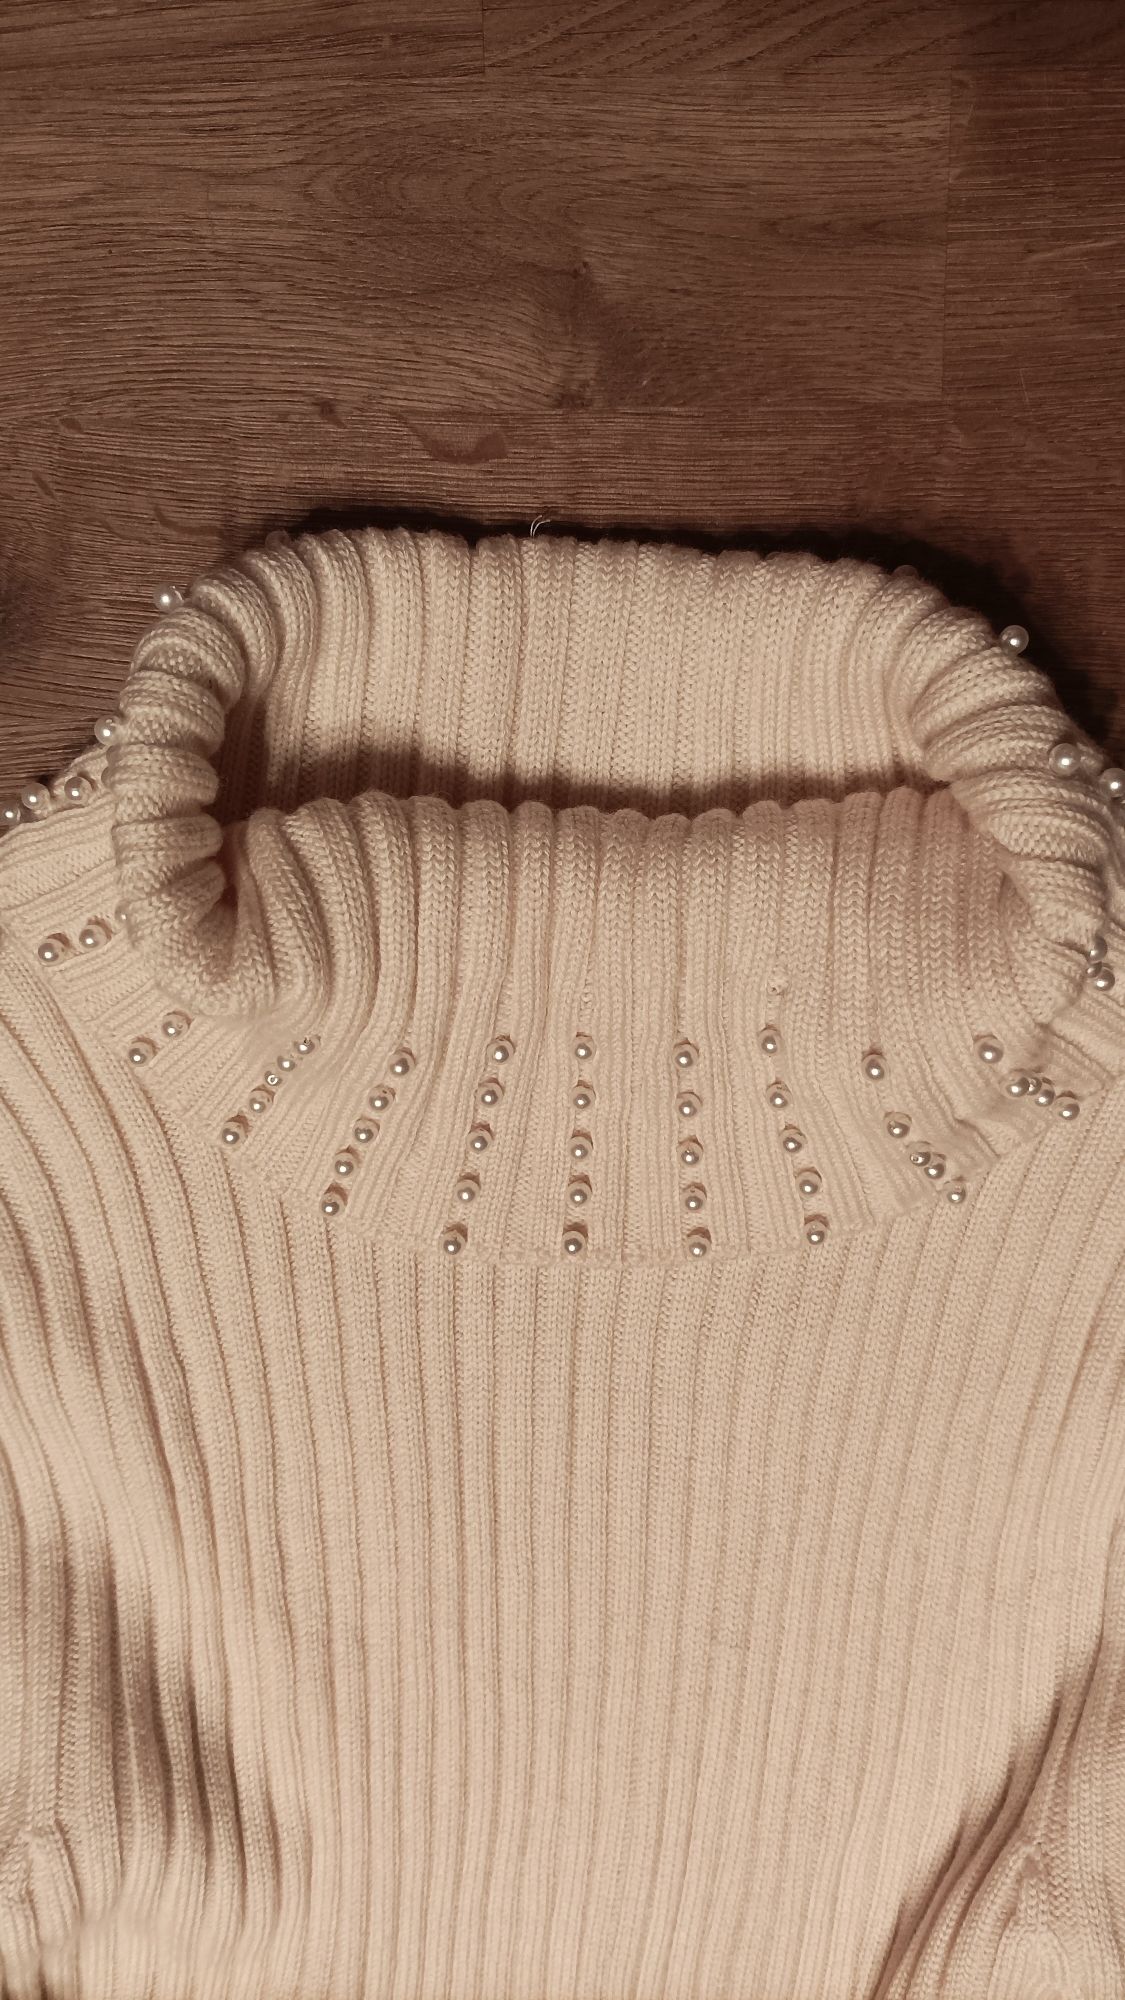 Cudny, waniliowy sweter, sweterek,wełna, prążki,koraliki, 38,40, 42,44